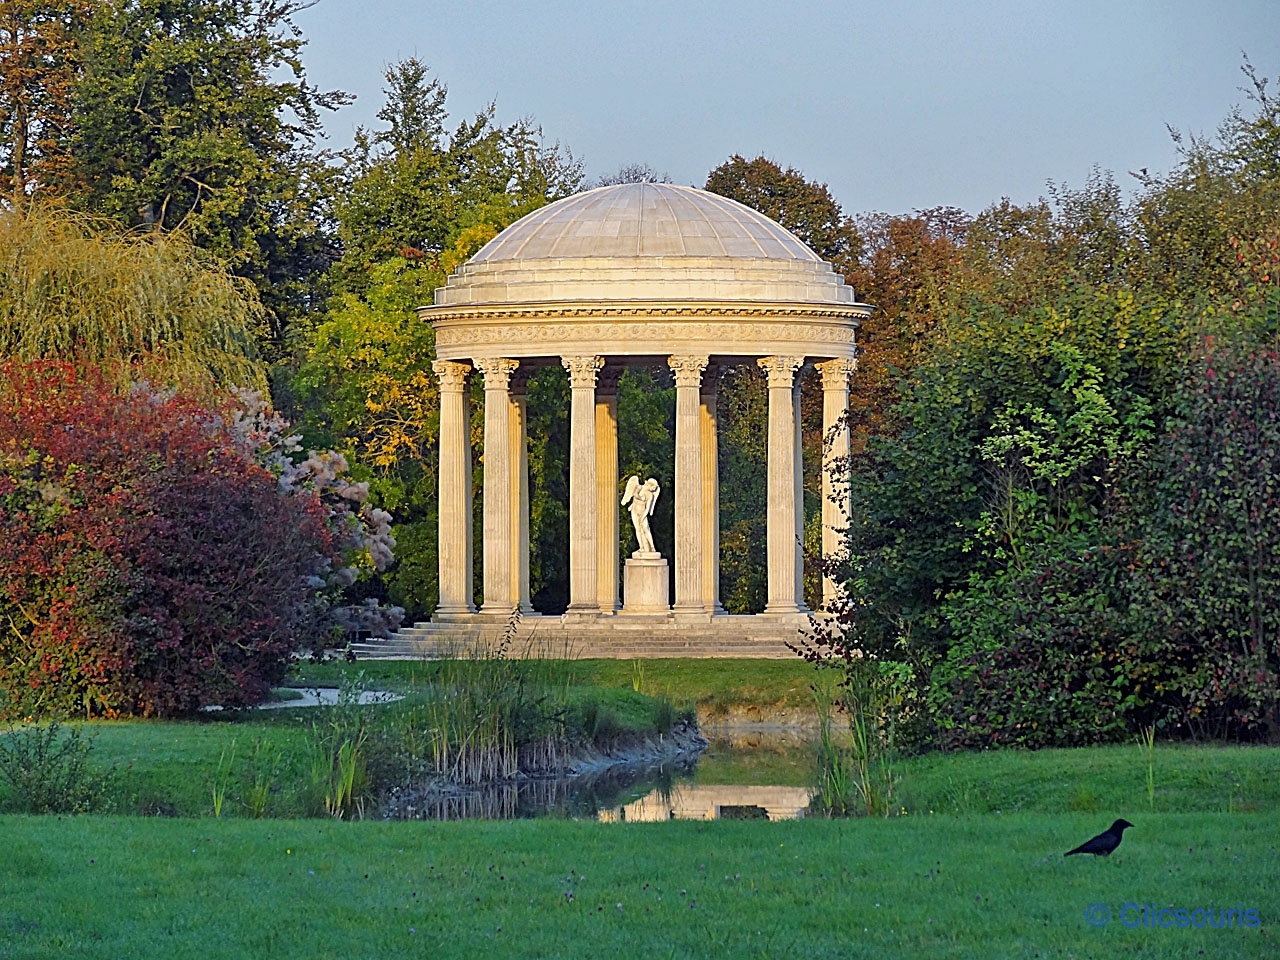 Versailles Petit Trianon Temple de l'amour